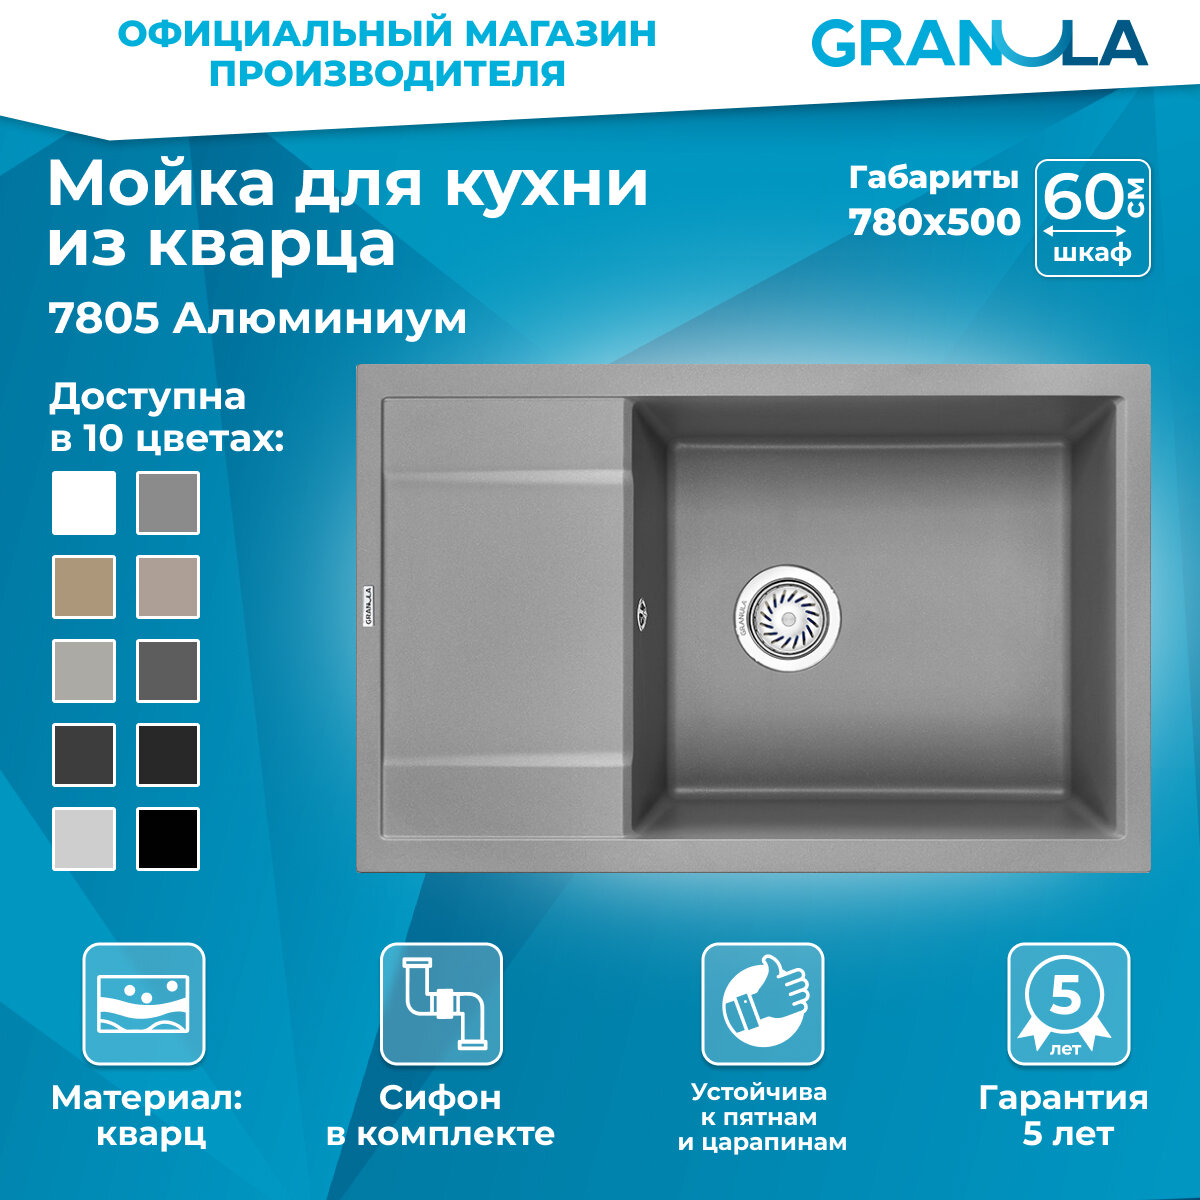 Мойка для кухни Granula 7805, алюминиум (серый), врезная, кварцевая, раковина для кухни